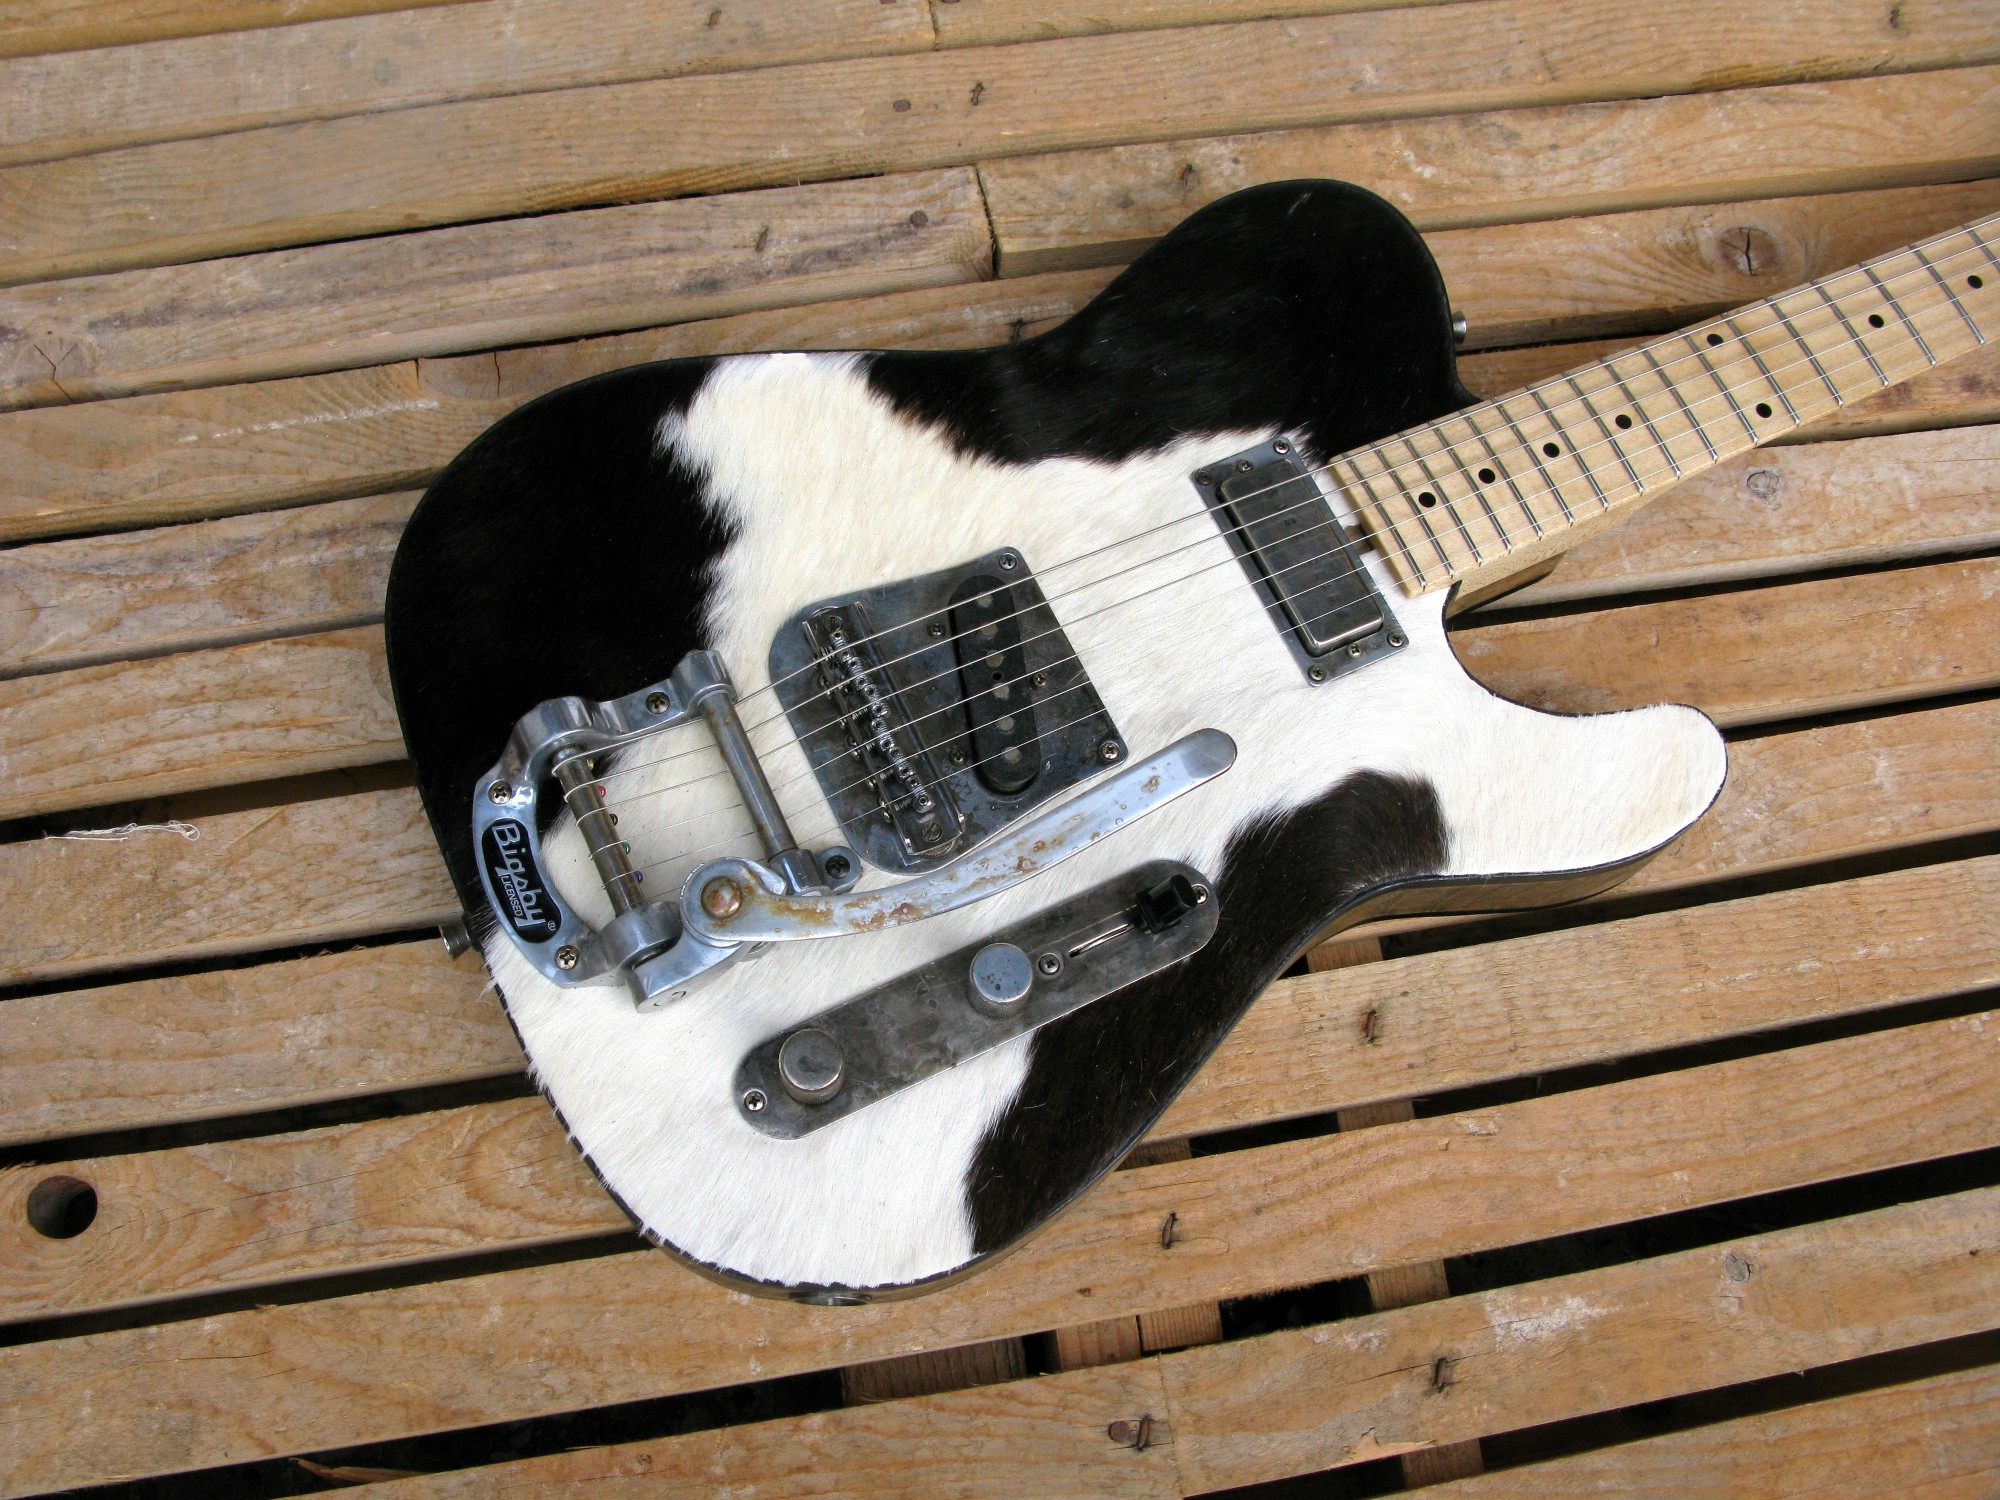 Body di chitarra Telecaster in castagno con top in pelle di mucca